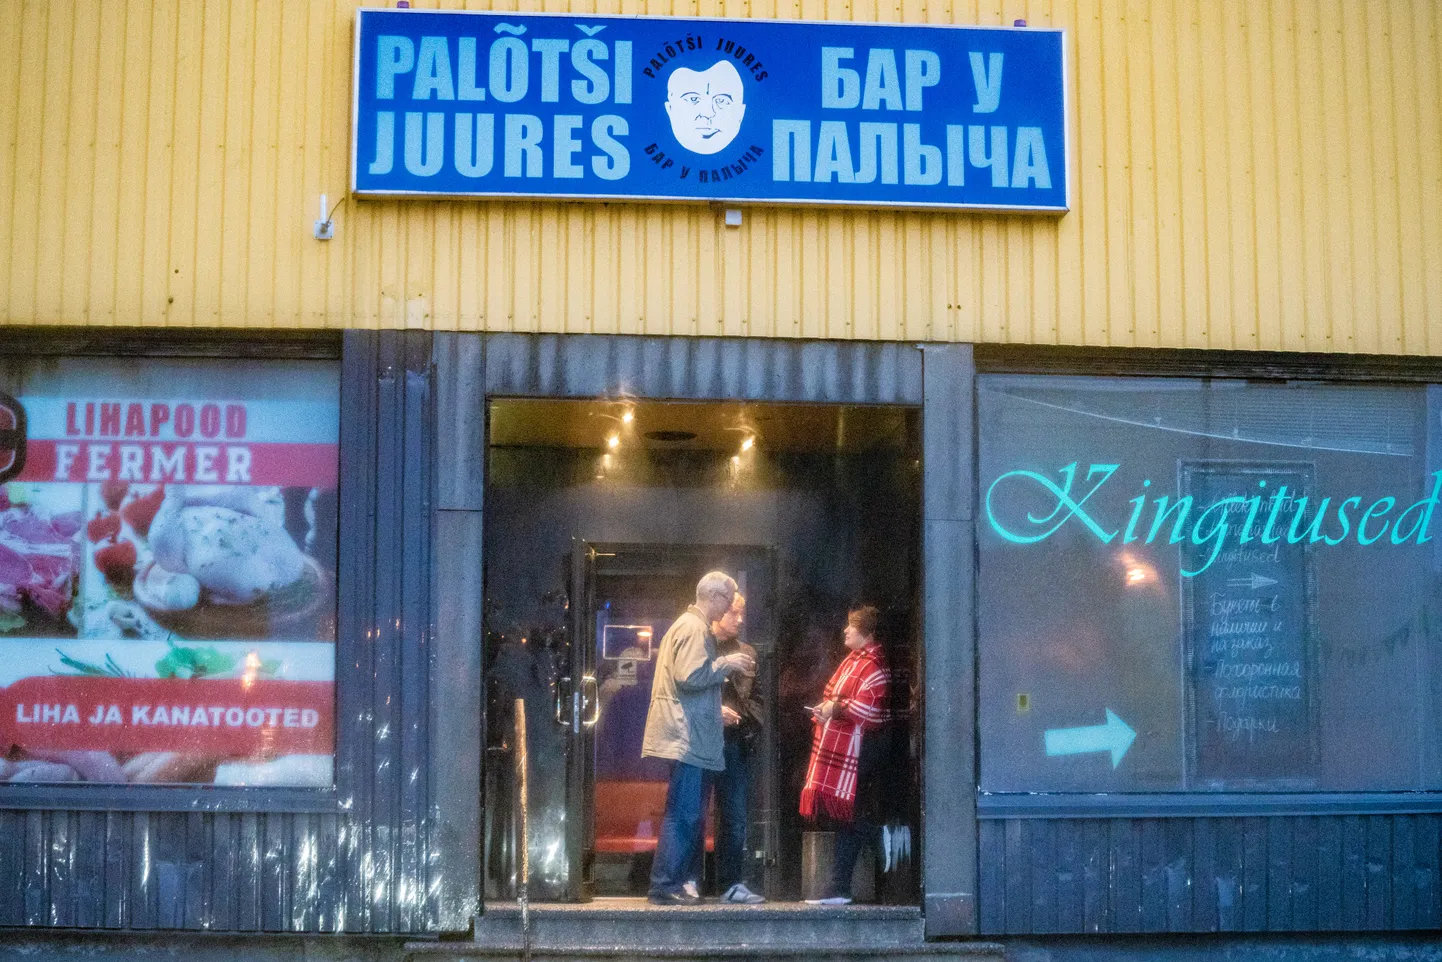 Бар "У Палыча", Ласнамяэ, Таллинн, снимок иллюстративный